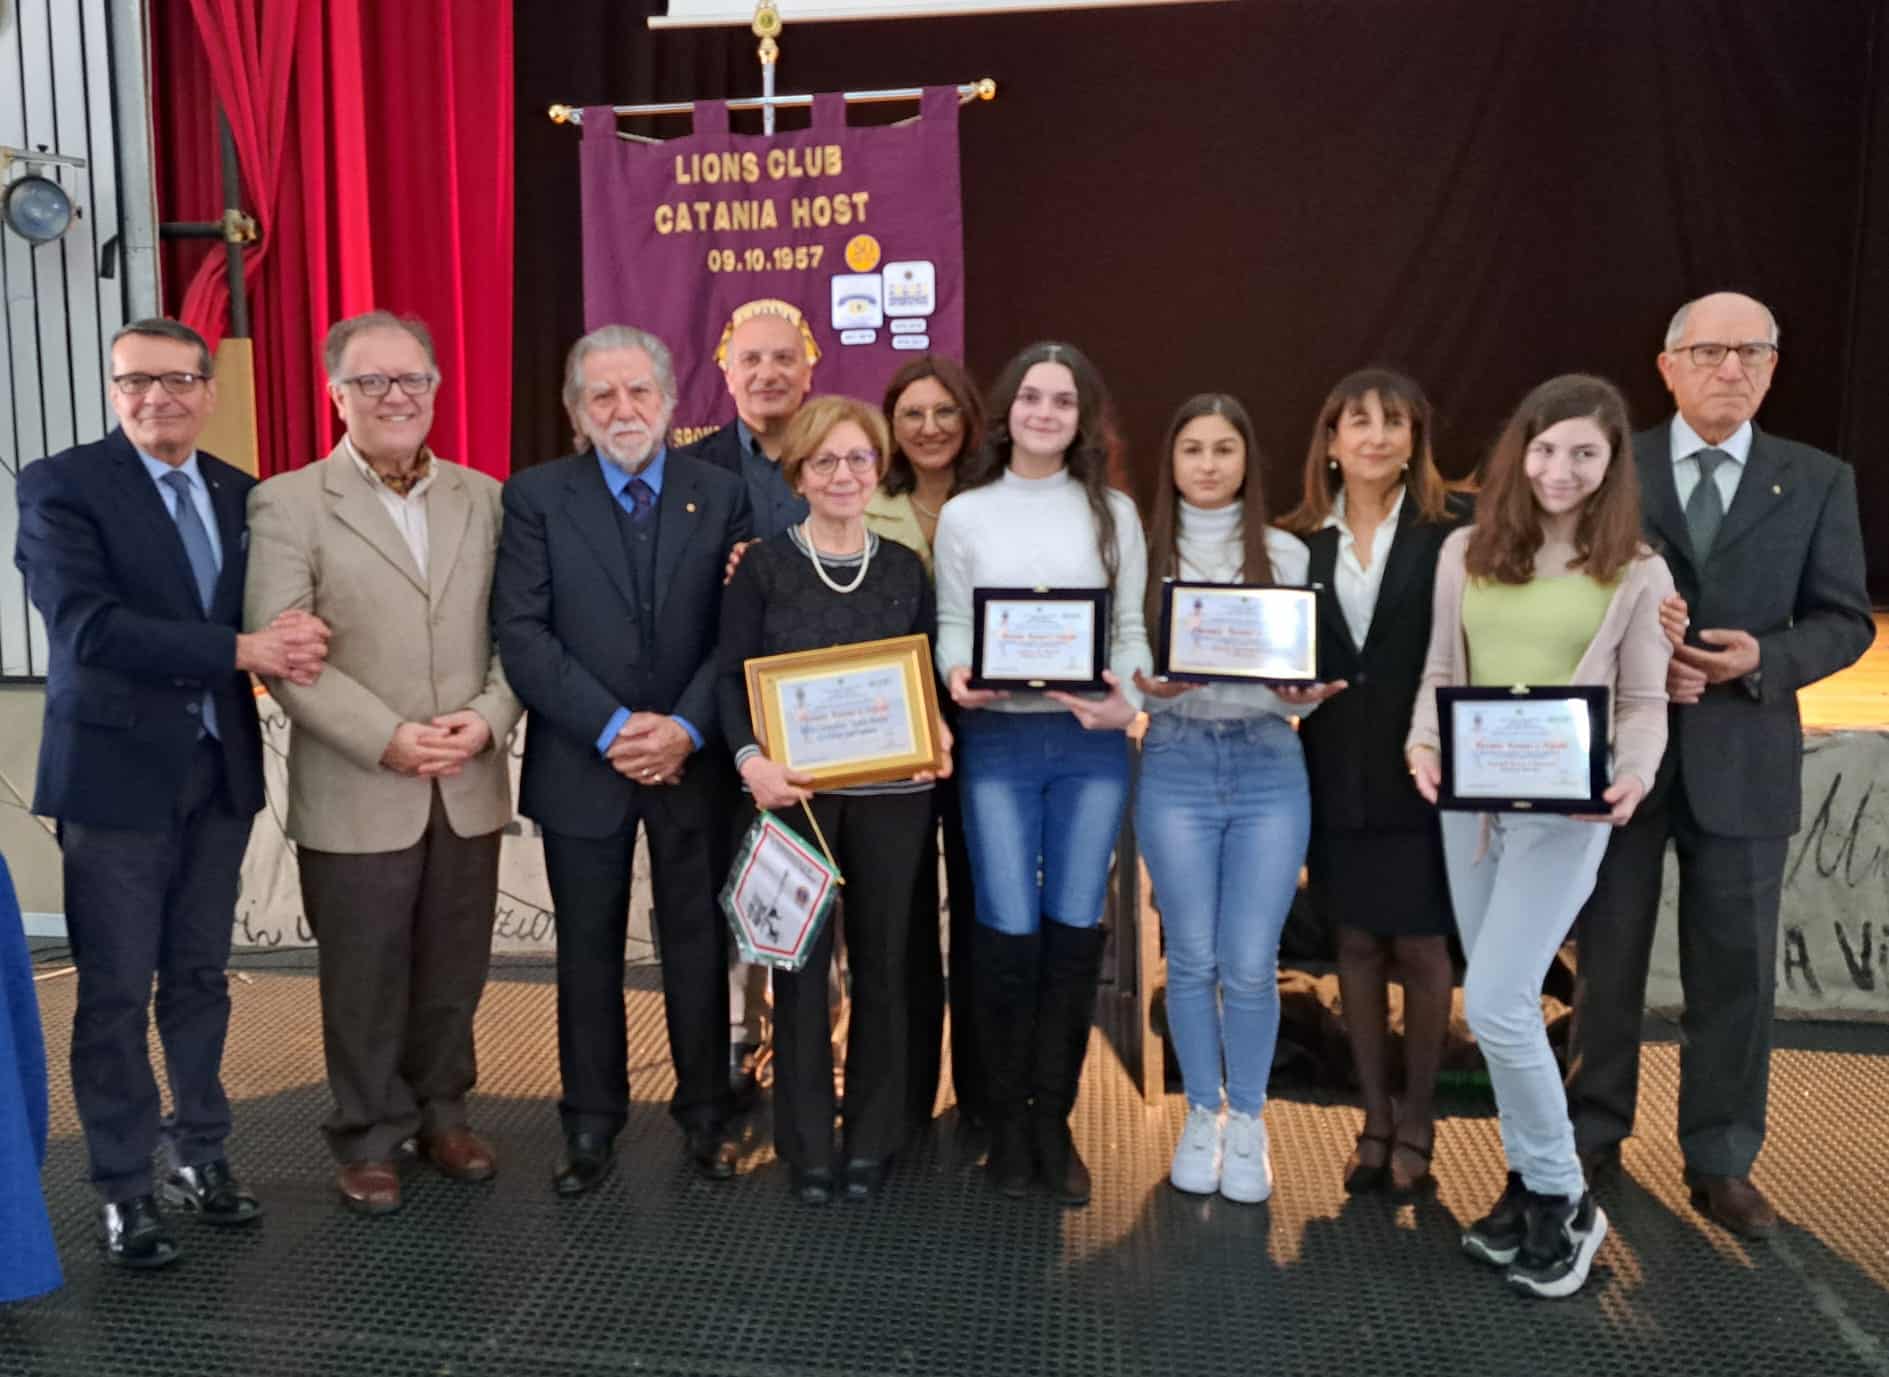 Festa all’I.C. “A. Malerba” di Catania per la premiazione del concorso “Nonni e nipoti” – VIDEO INTERVISTA e FOTO